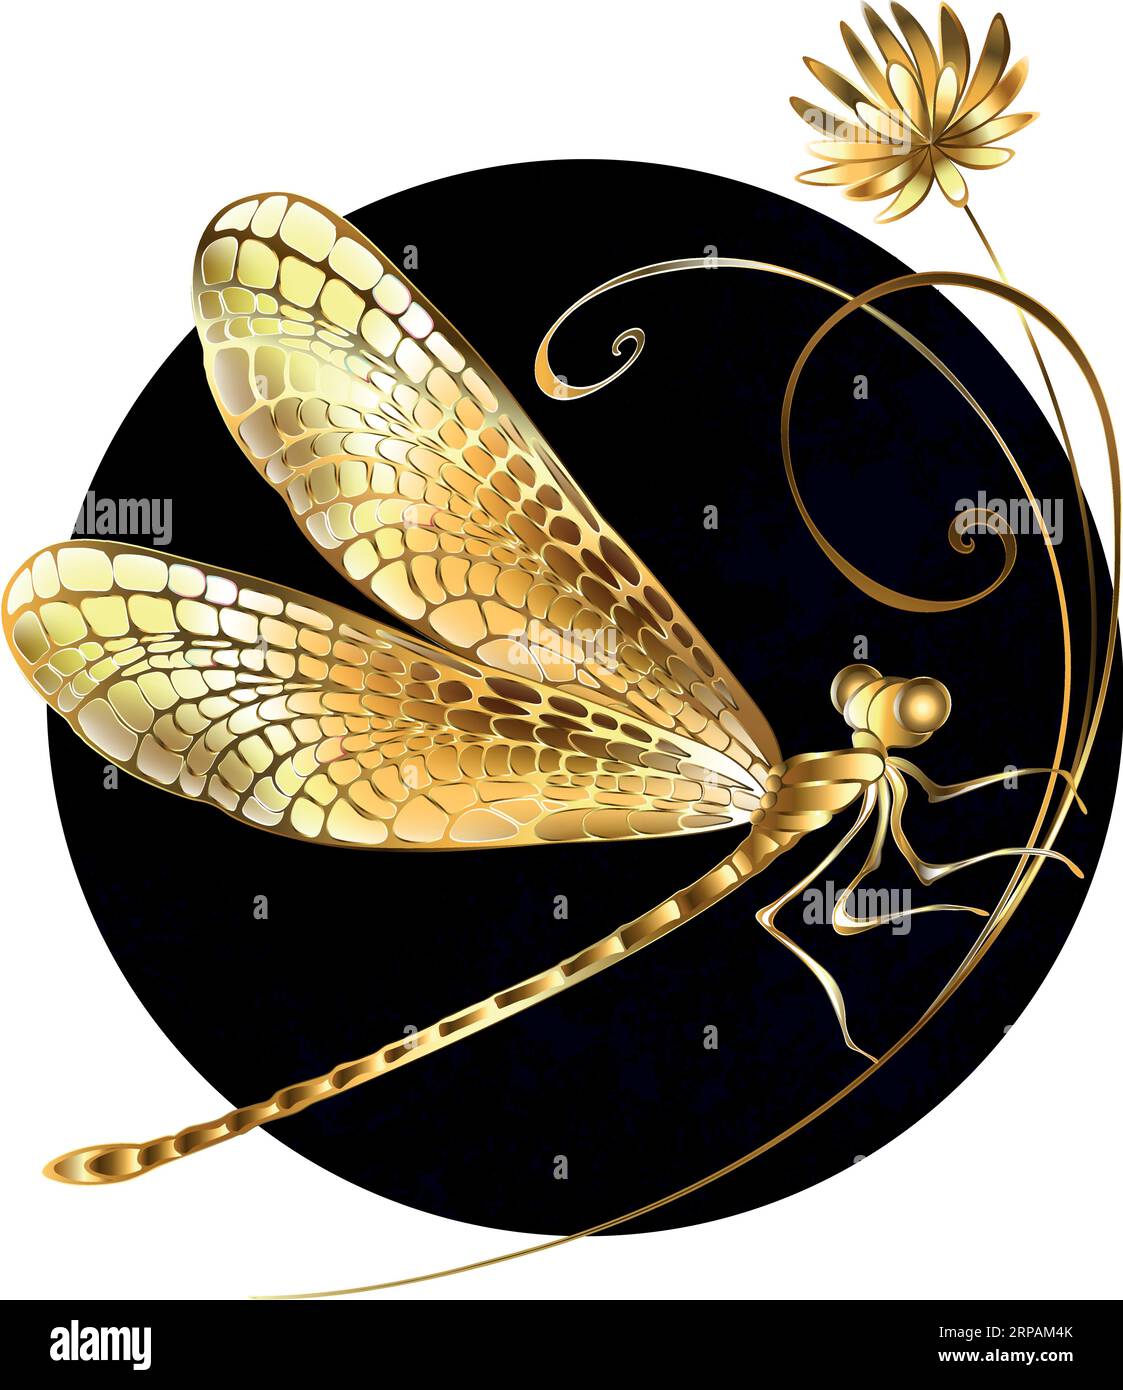 Künstlerisch bemalt, Gold, Schmuck, funkelnde Libelle mit detaillierten, filigranen Flügeln auf goldener Wildblume, gegen schwarzen texturierten Kreis. Goldener dr. Stock Vektor